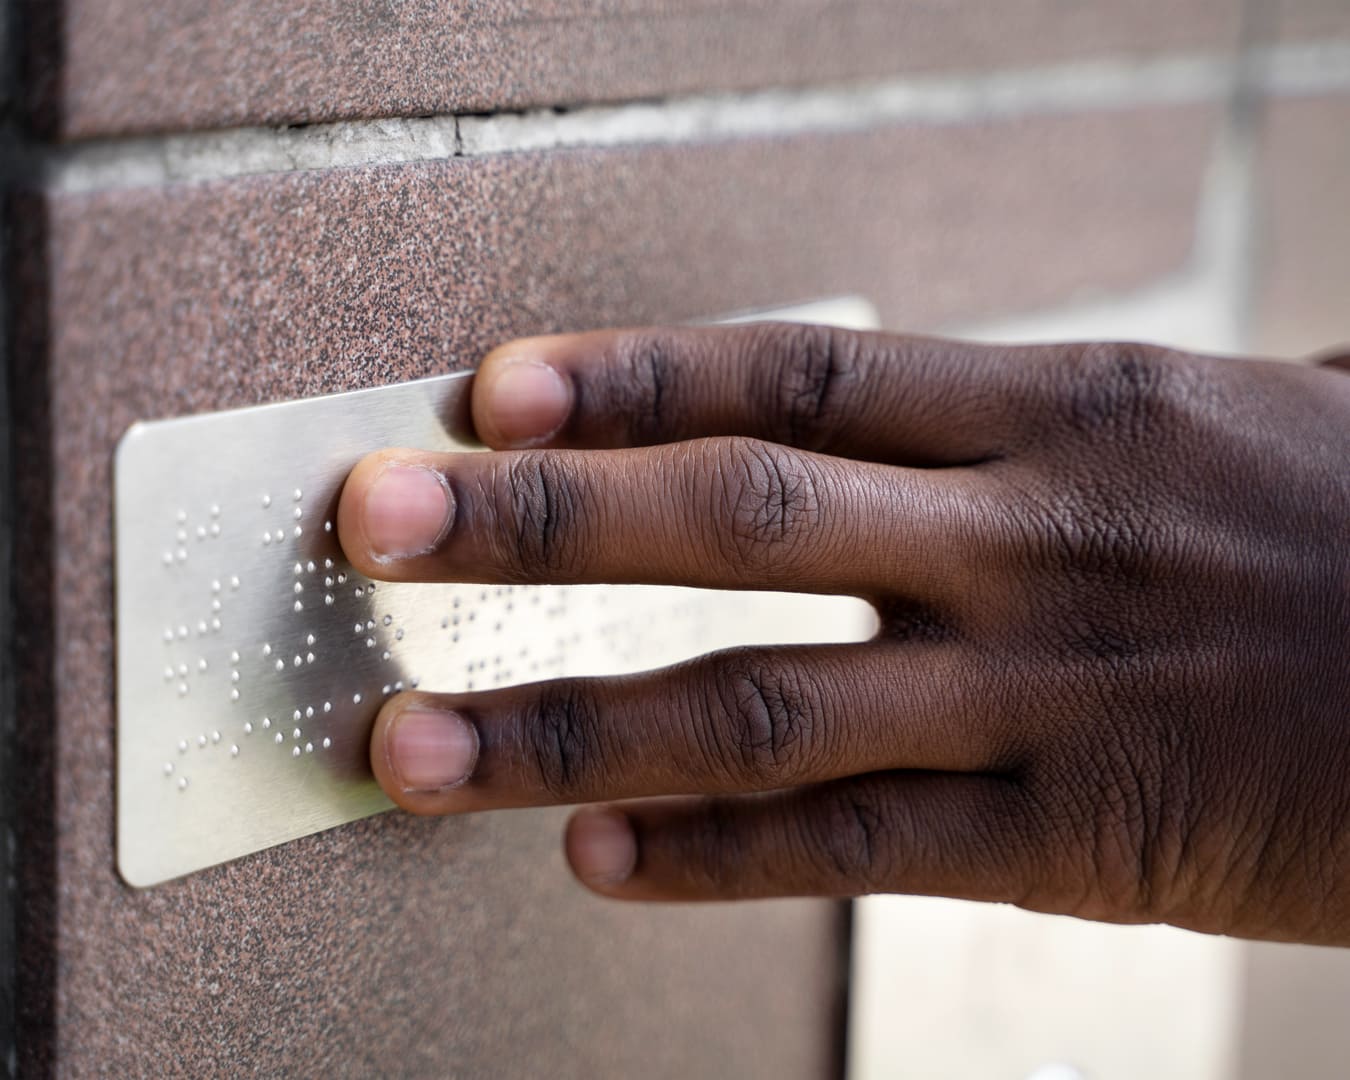 Esta é uma imagem de uma mão pressionando uma placa em braille. Normas de Acessibilidade da ABNT com acesso gratuito: inclusão de pessoas com deficiência.